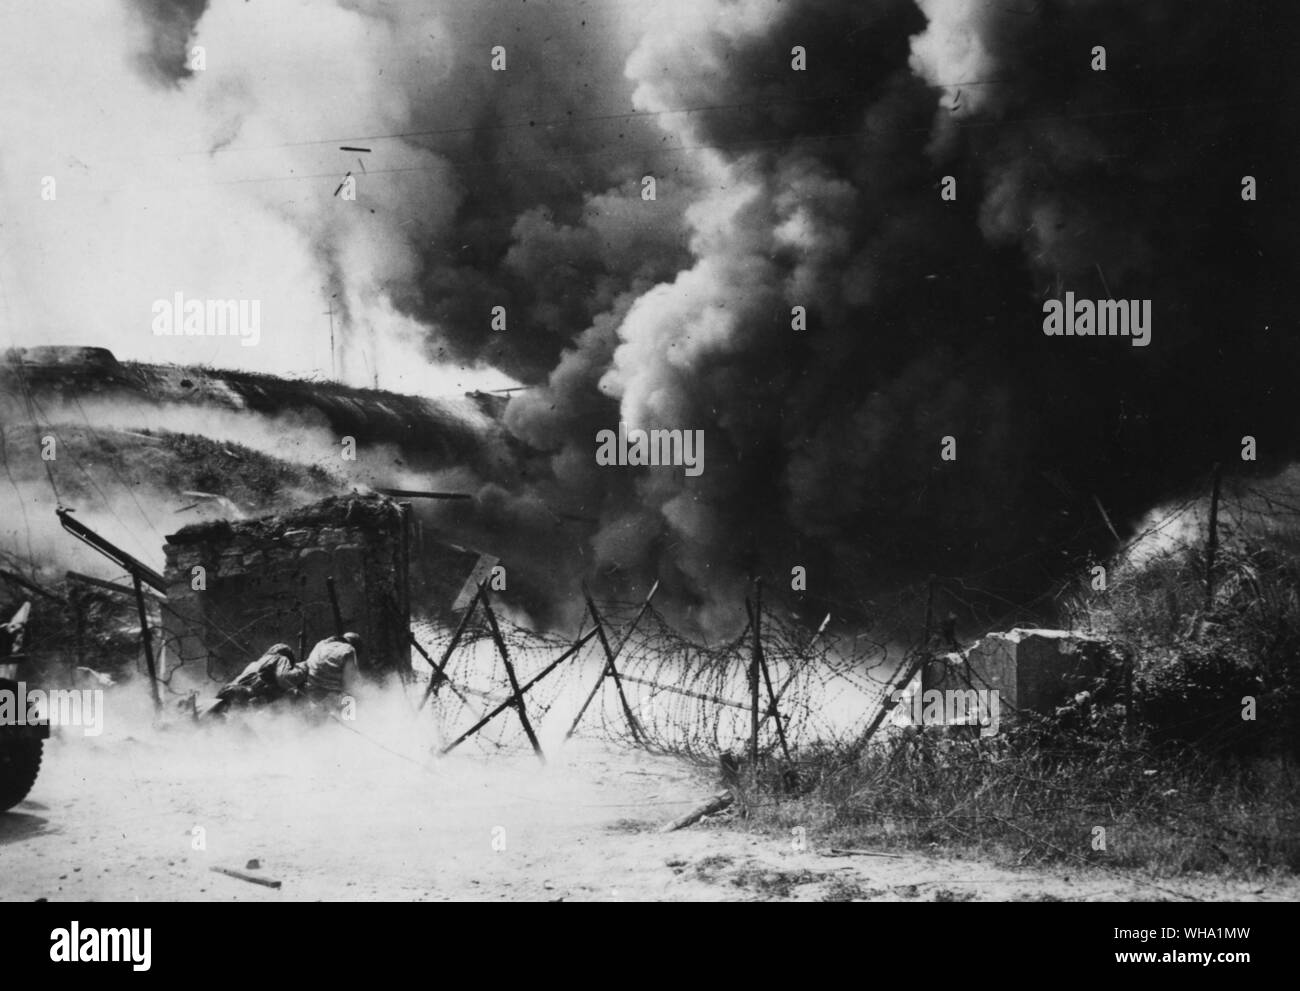 WW2 : Bataille pour Cherbourg : des foules de fumée s'élèvent comme un souffle frais pôle casemate nazi, l'une des défenses extérieures allemandes de Cherbourg, France. Sur la gauche sont deux américains, certains de ceux qui ont capturé le grand port en eau profonde le 27 juin 1944, à l'abri de l'explosion. Banque D'Images